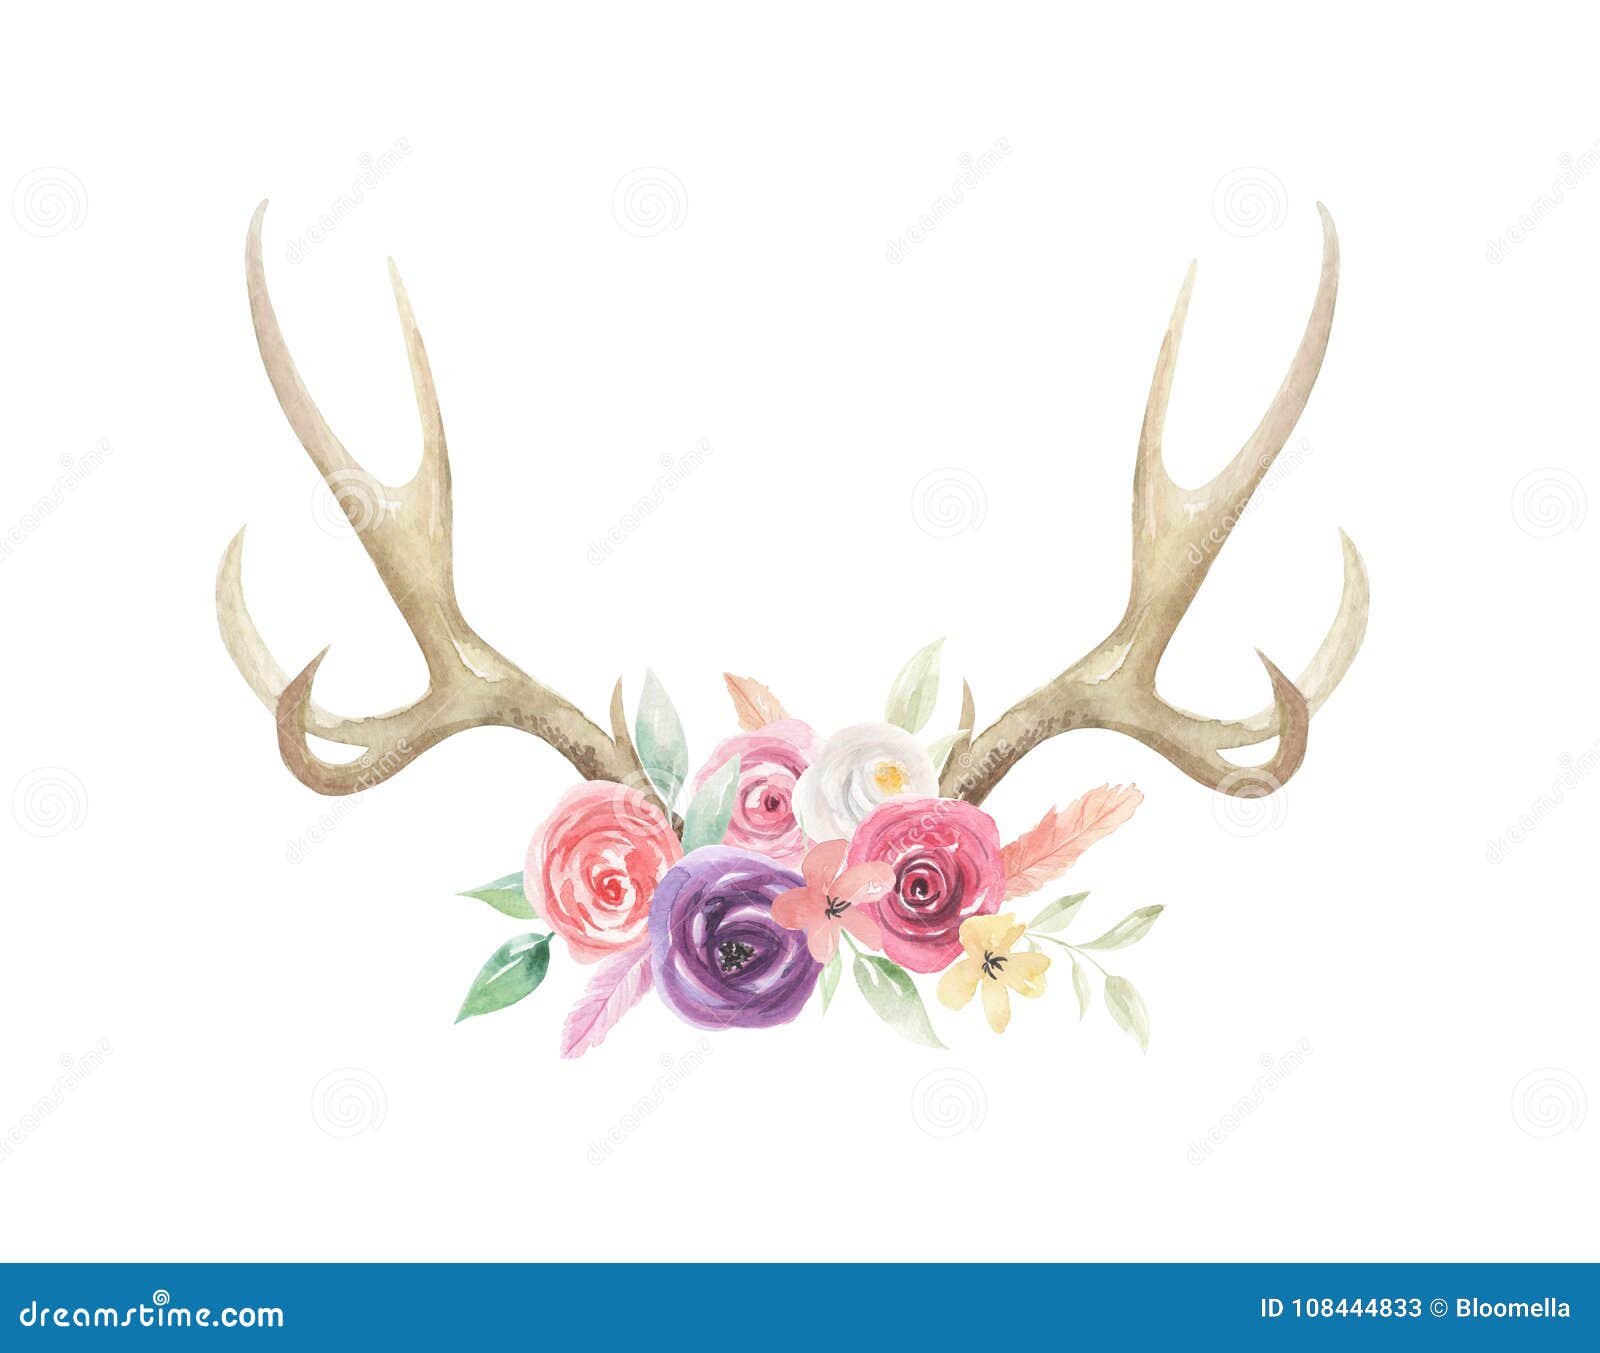 watercolor flowers florals antlers deer stag horns bone painted